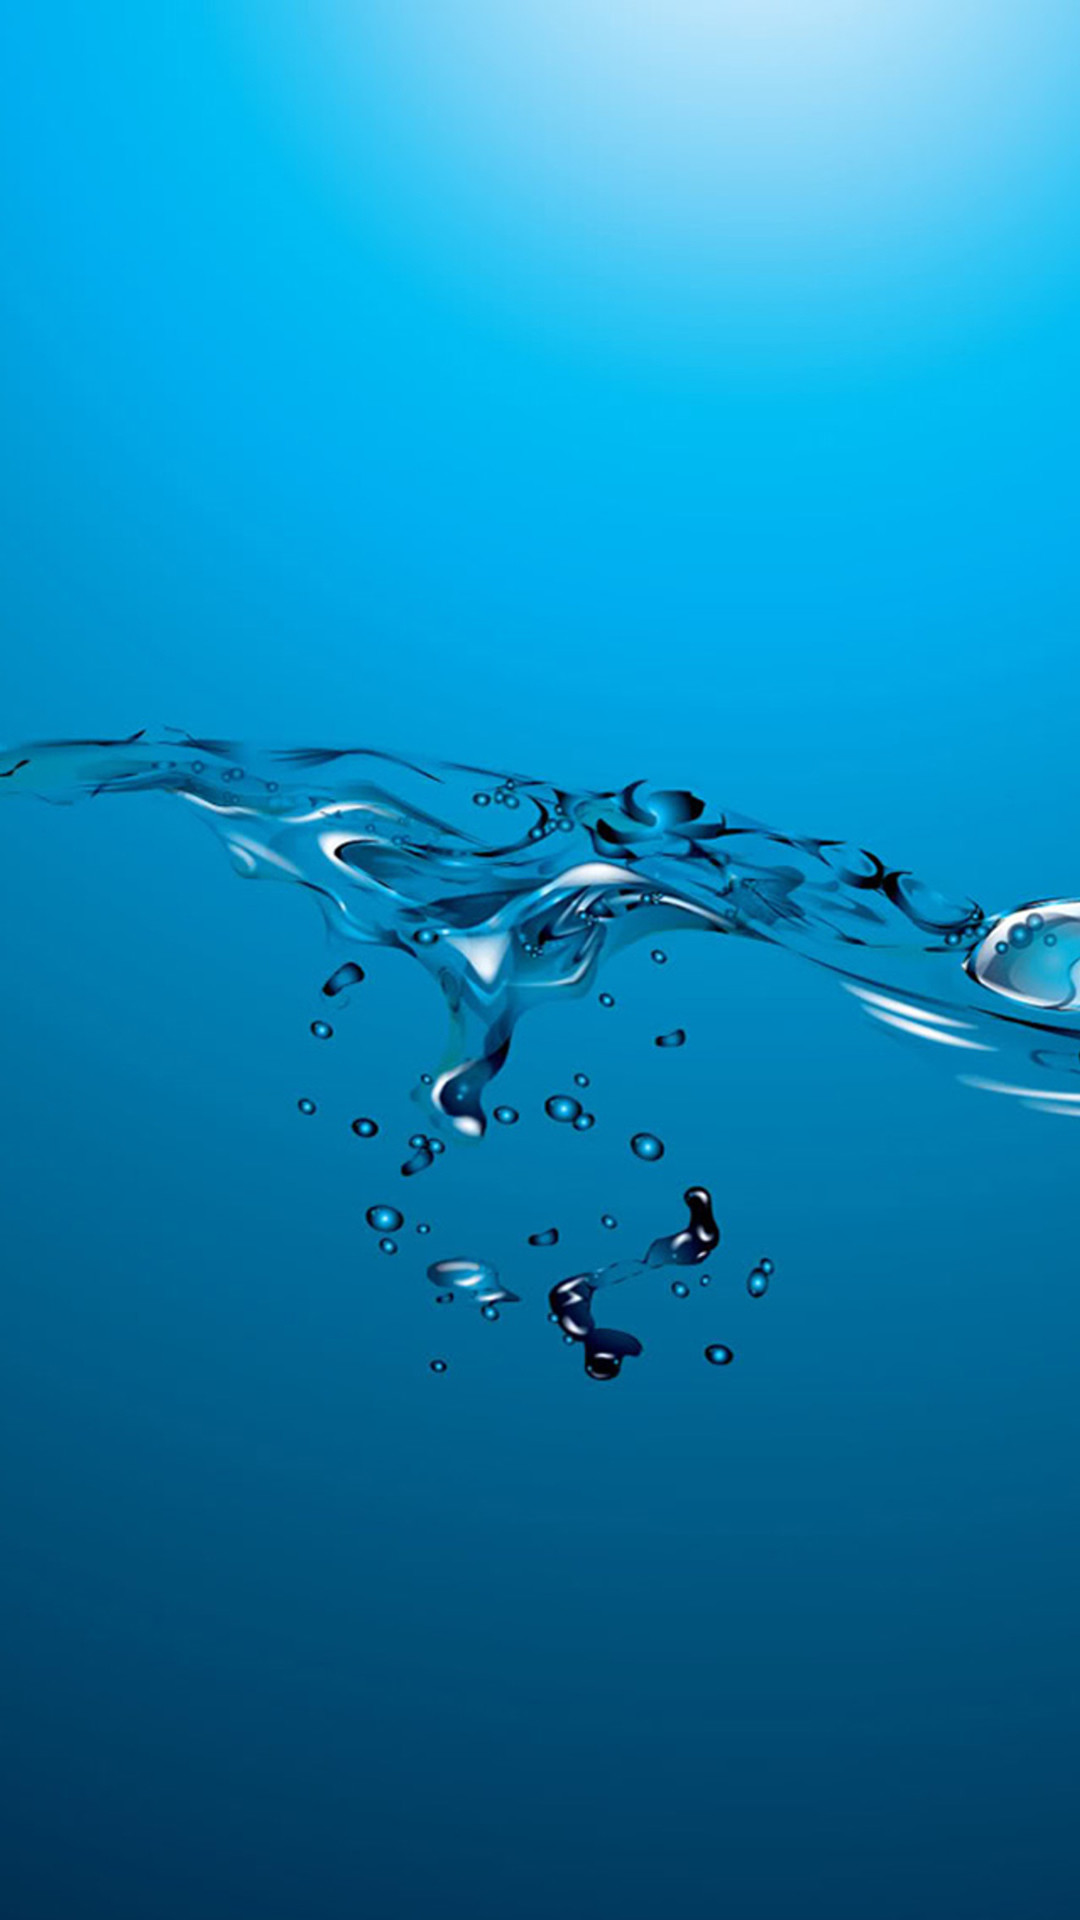 1080x1920 Abstract Ocean Water Splash iPhone 6 wallpaper